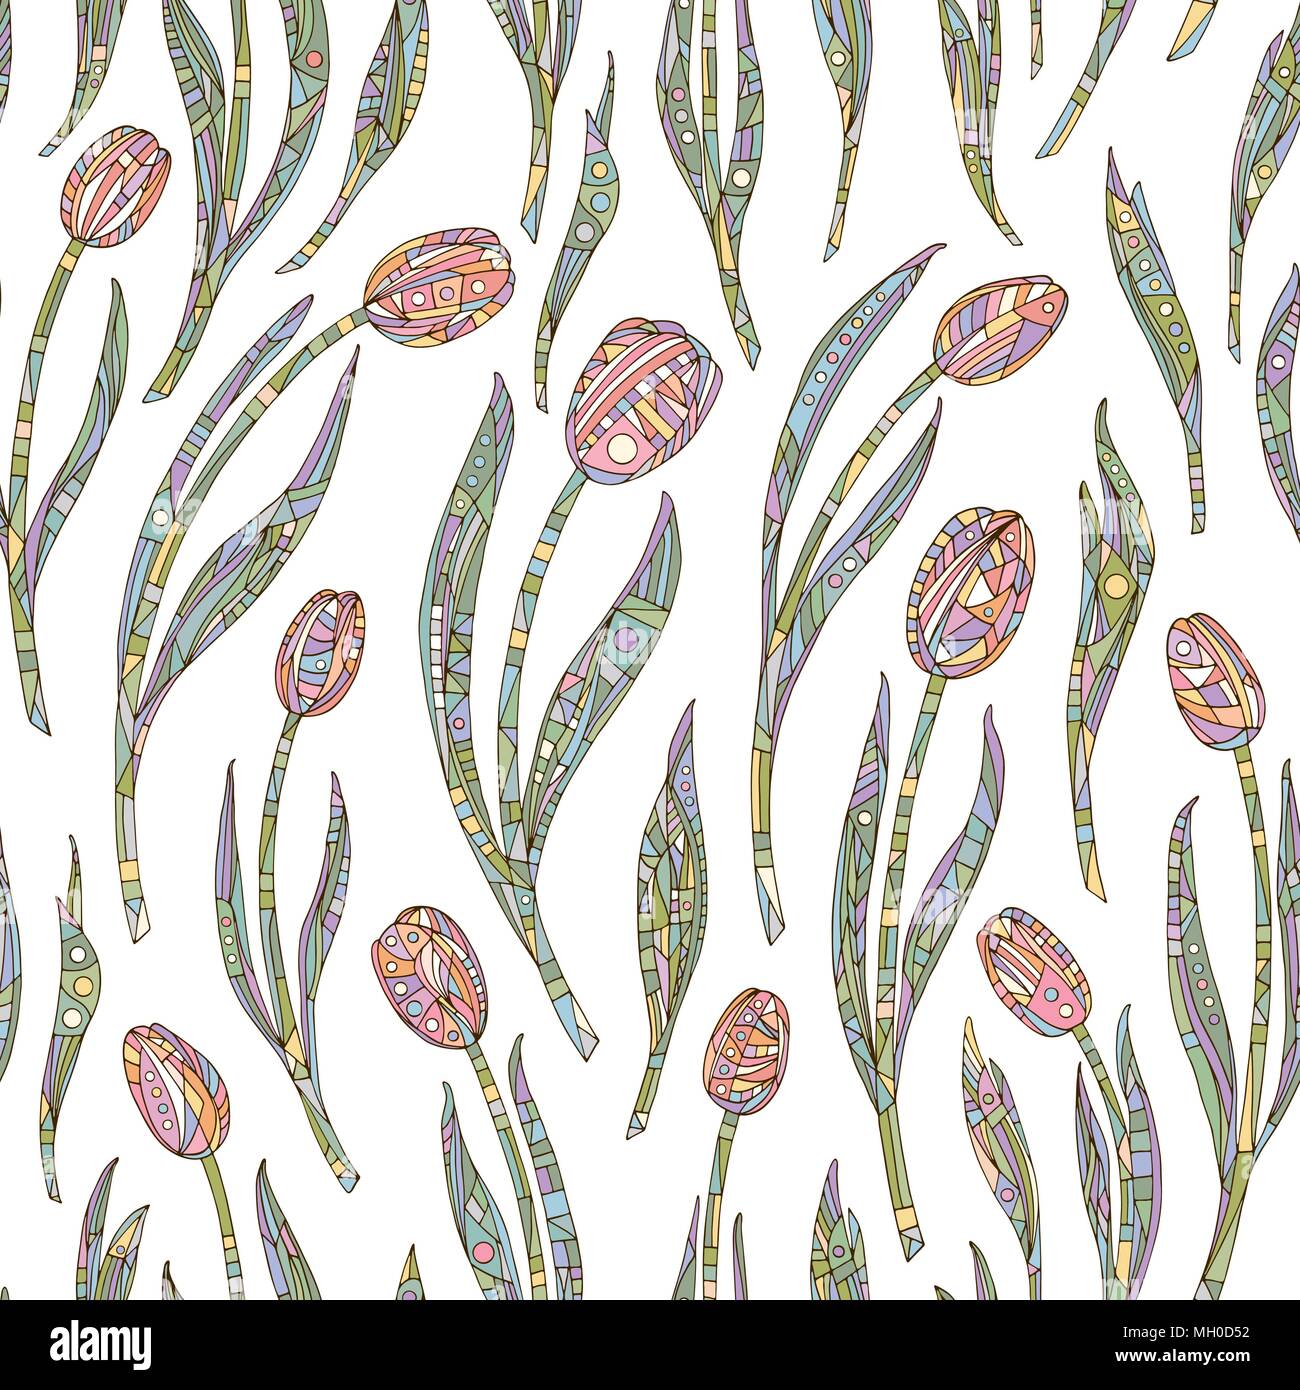 Tulipes fleurs motif. Hand drawn seamless floral vector background. La nature abstraite de la texture pour le papier peint, papier d'emballage, le design textile, la surface, le tissu. Illustration de Vecteur